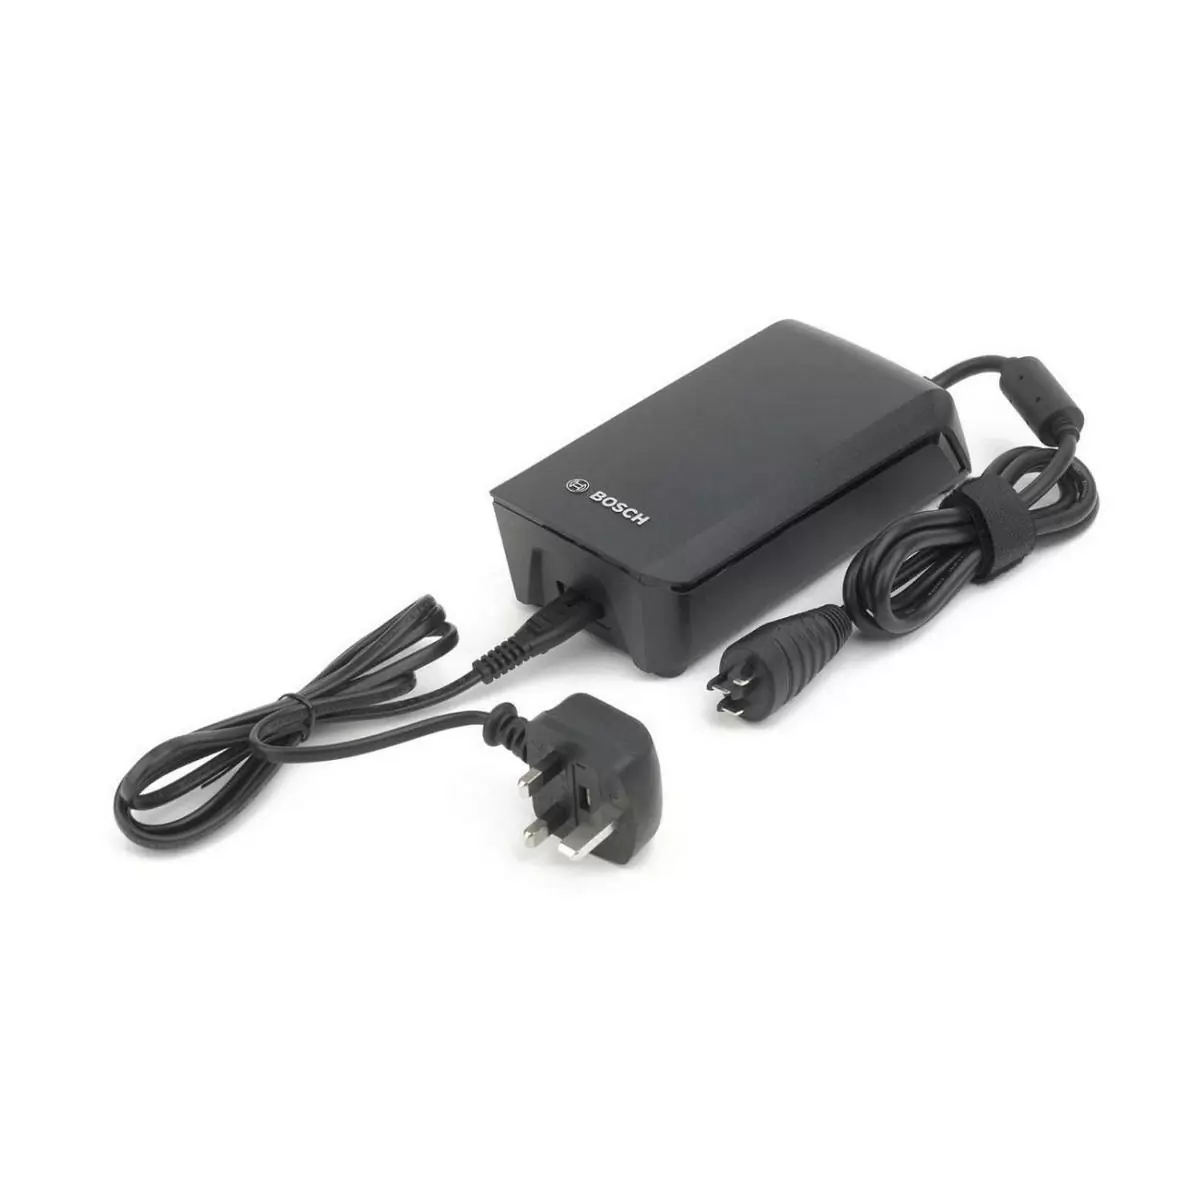 Cargador de baterias 6a fastcharger power cable uk 2019 - image